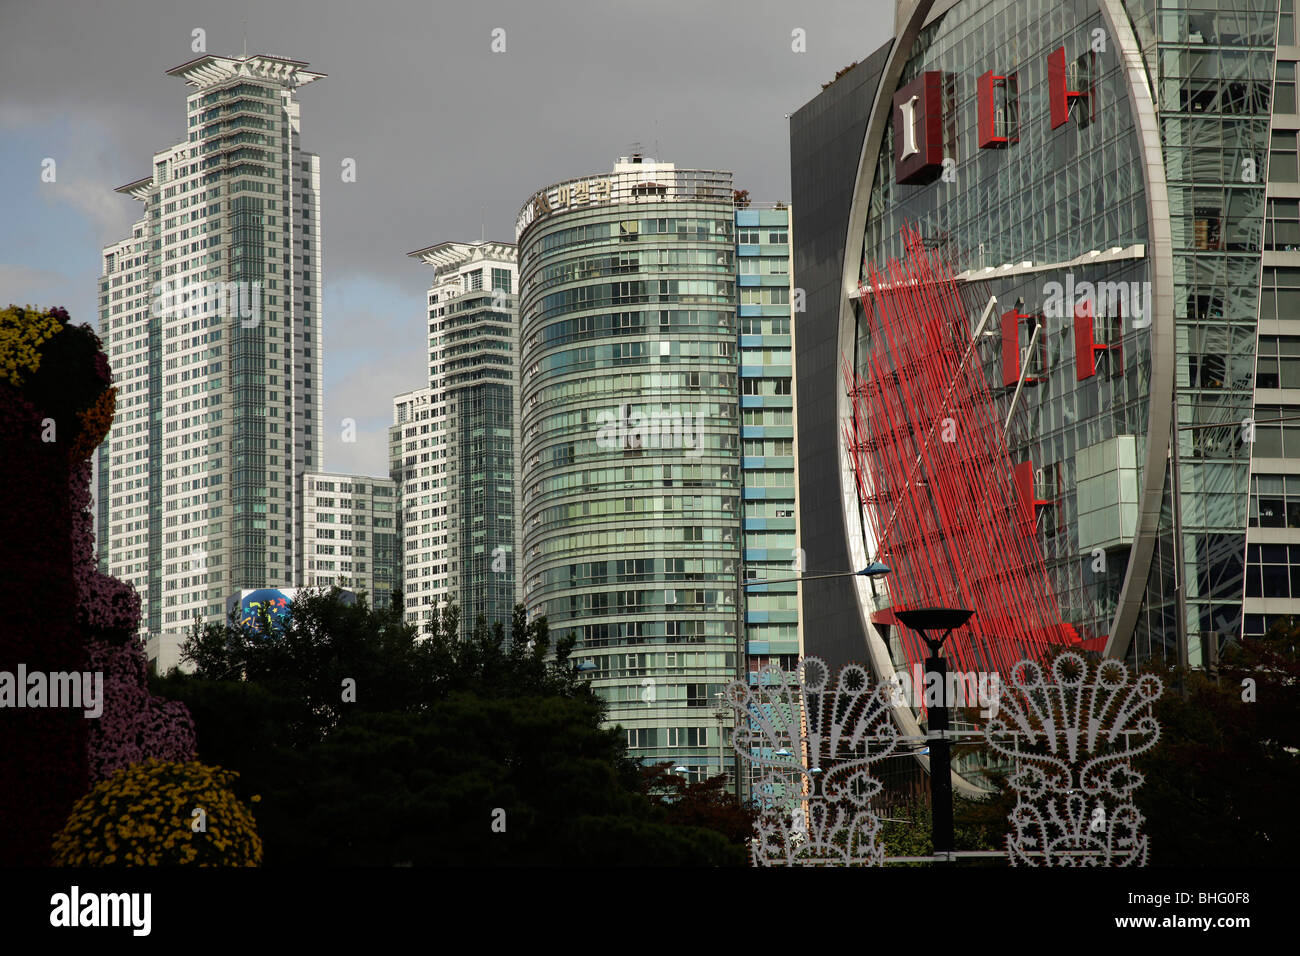 moderne Architektur in COEX Convention and Exhibition Center im Süden Koreas Hauptstadt Seoul, Asien Stockfoto